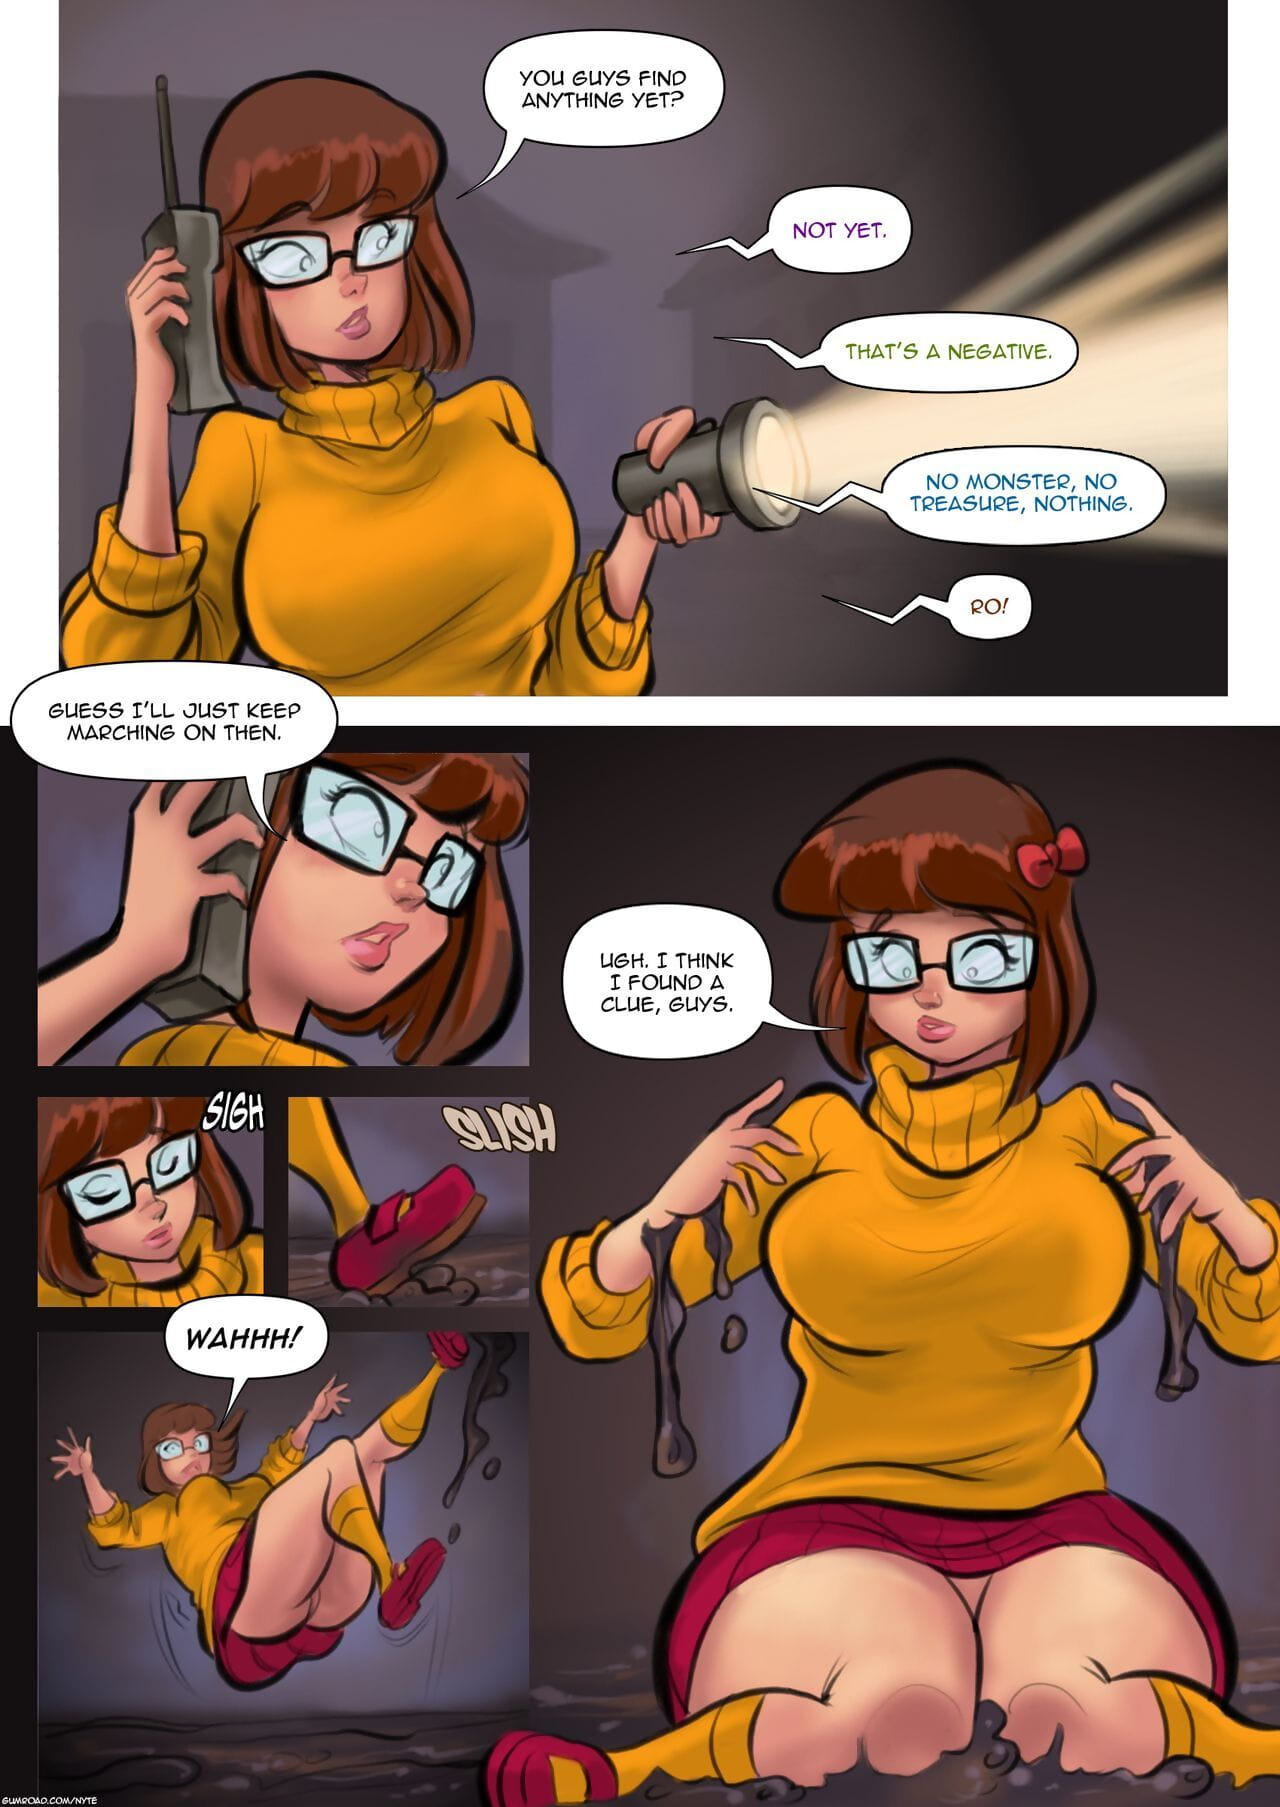 nyte die geheimnisvoll verschwinden der Velma dinkley page 1